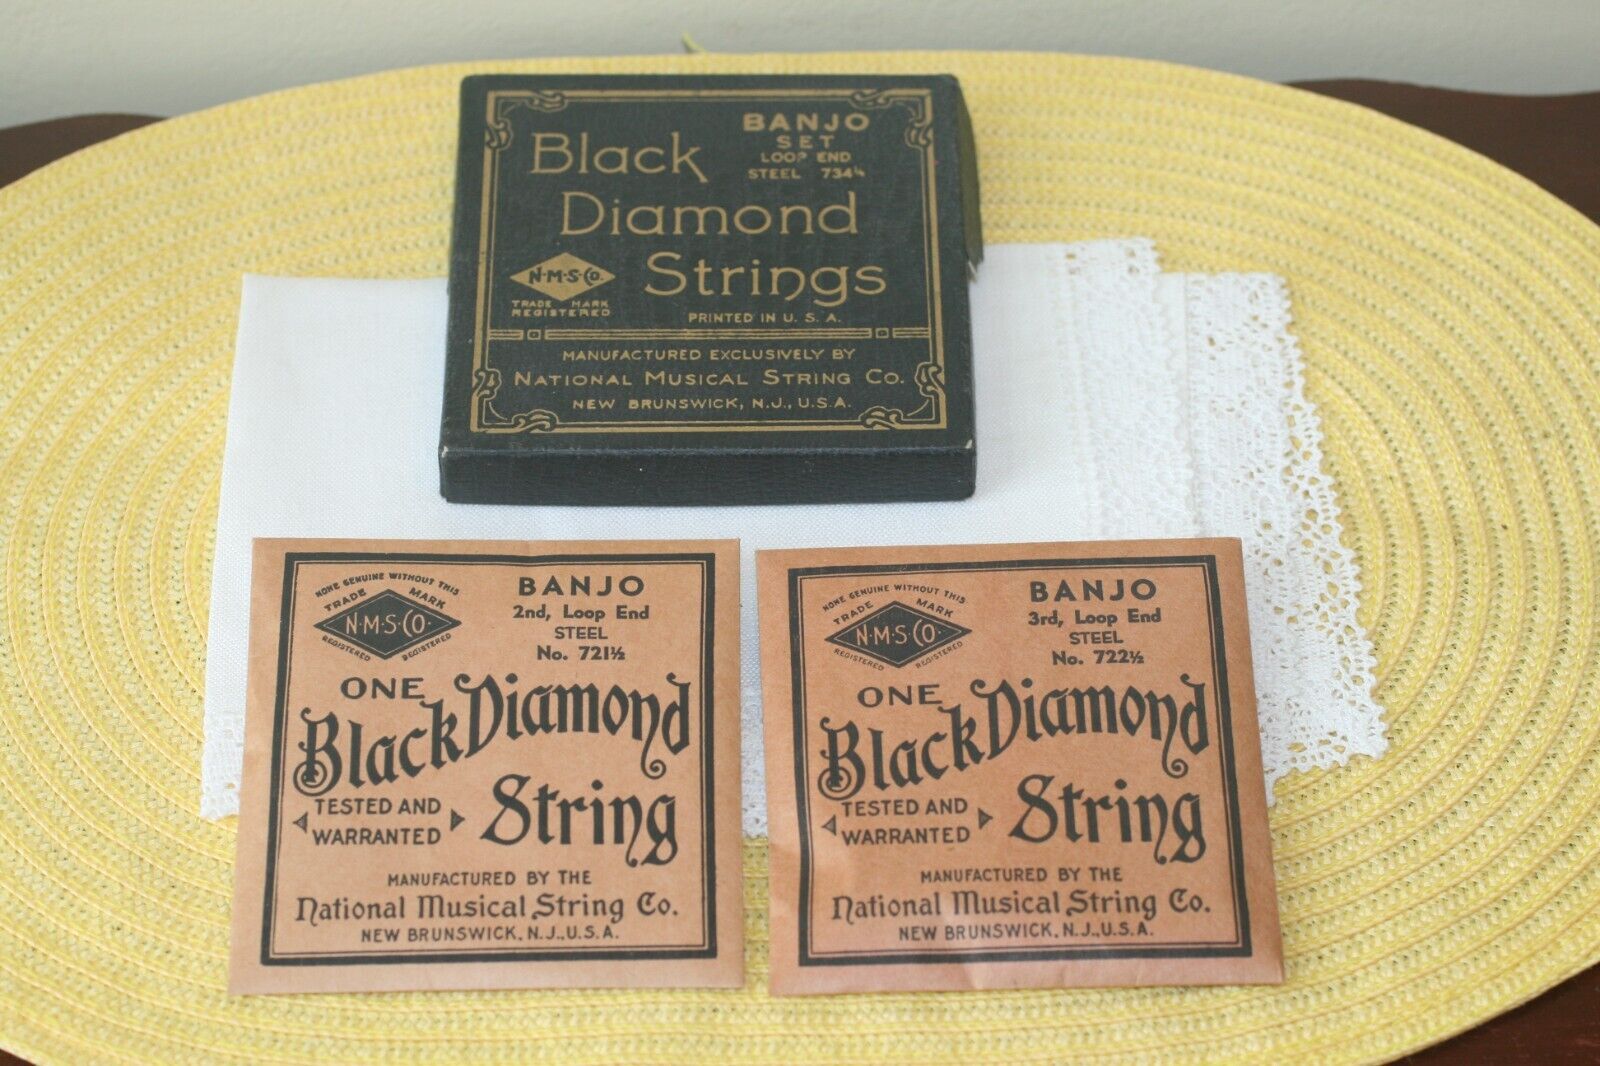 2 BANJO BLACK DIAMOND STRINGS 3rd LOOP END No.722 1/2 ; 2nd LOOP END No. 721 1/2